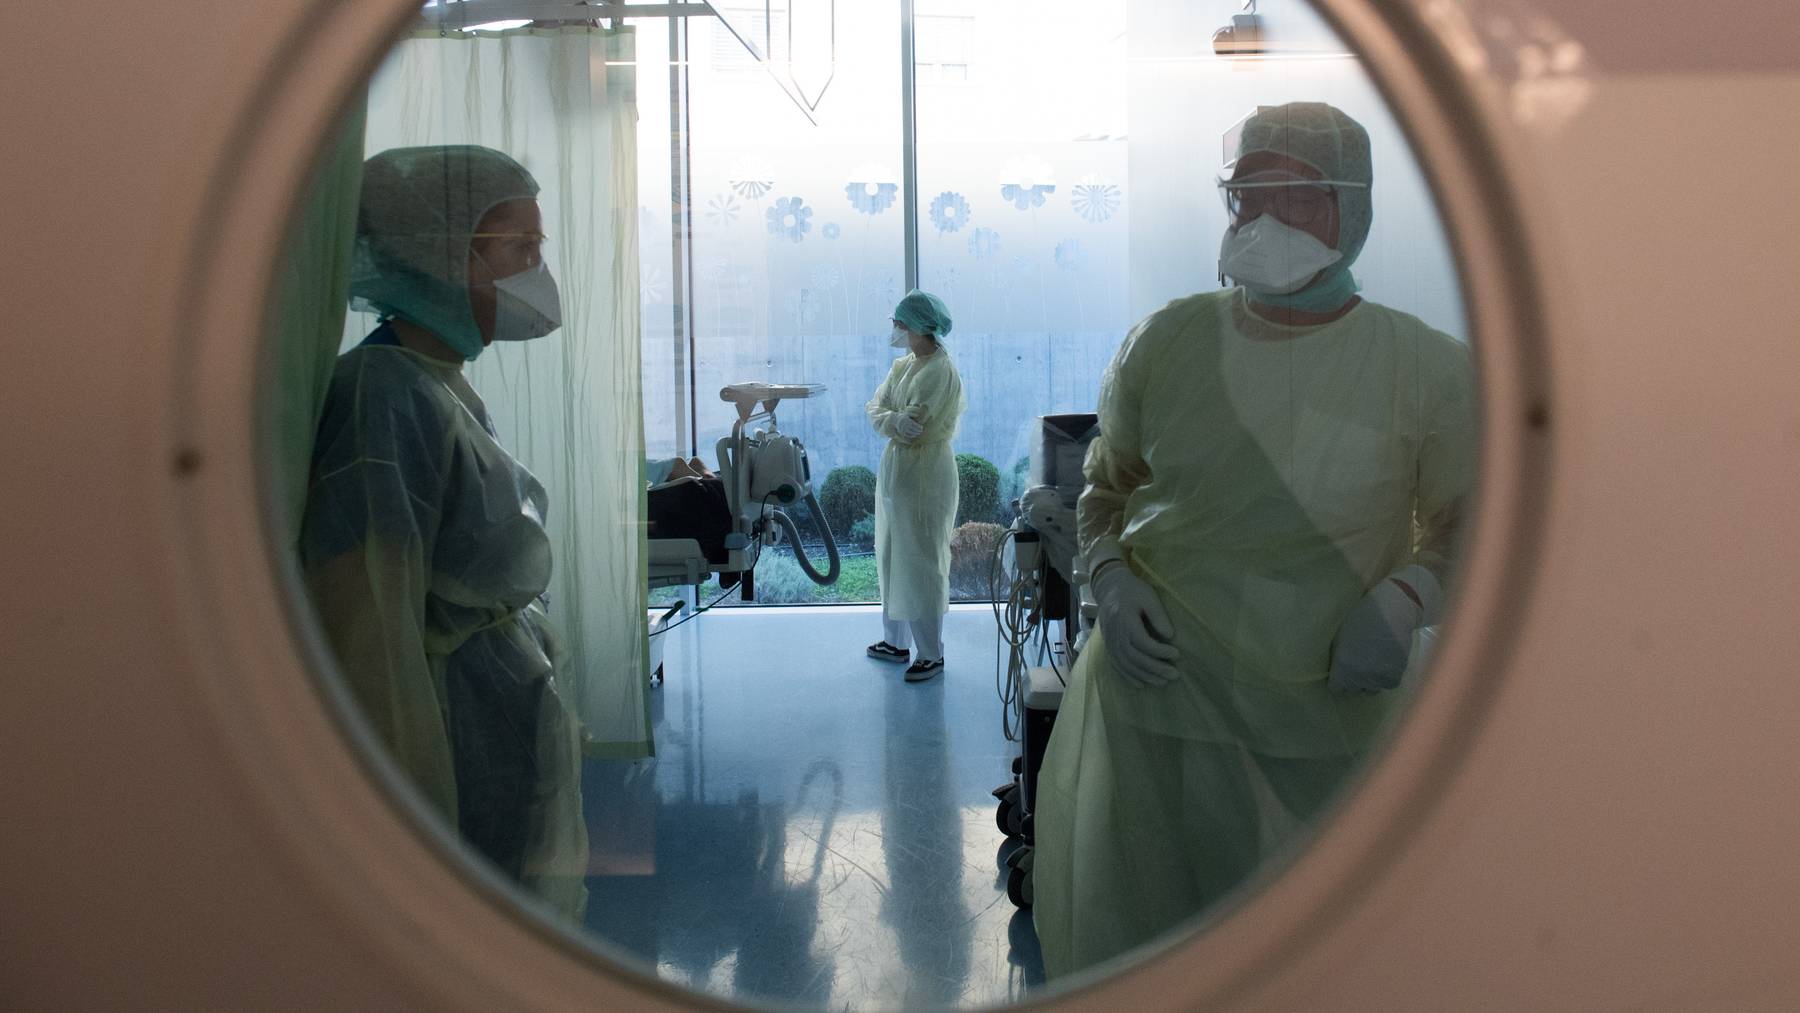 Die Schweiz ist für Mediziner aus der EU attraktiv. Nun erhalten die Kantone mehr Instrumente, um deren Zulassung zu steuern. (Symbolbild)